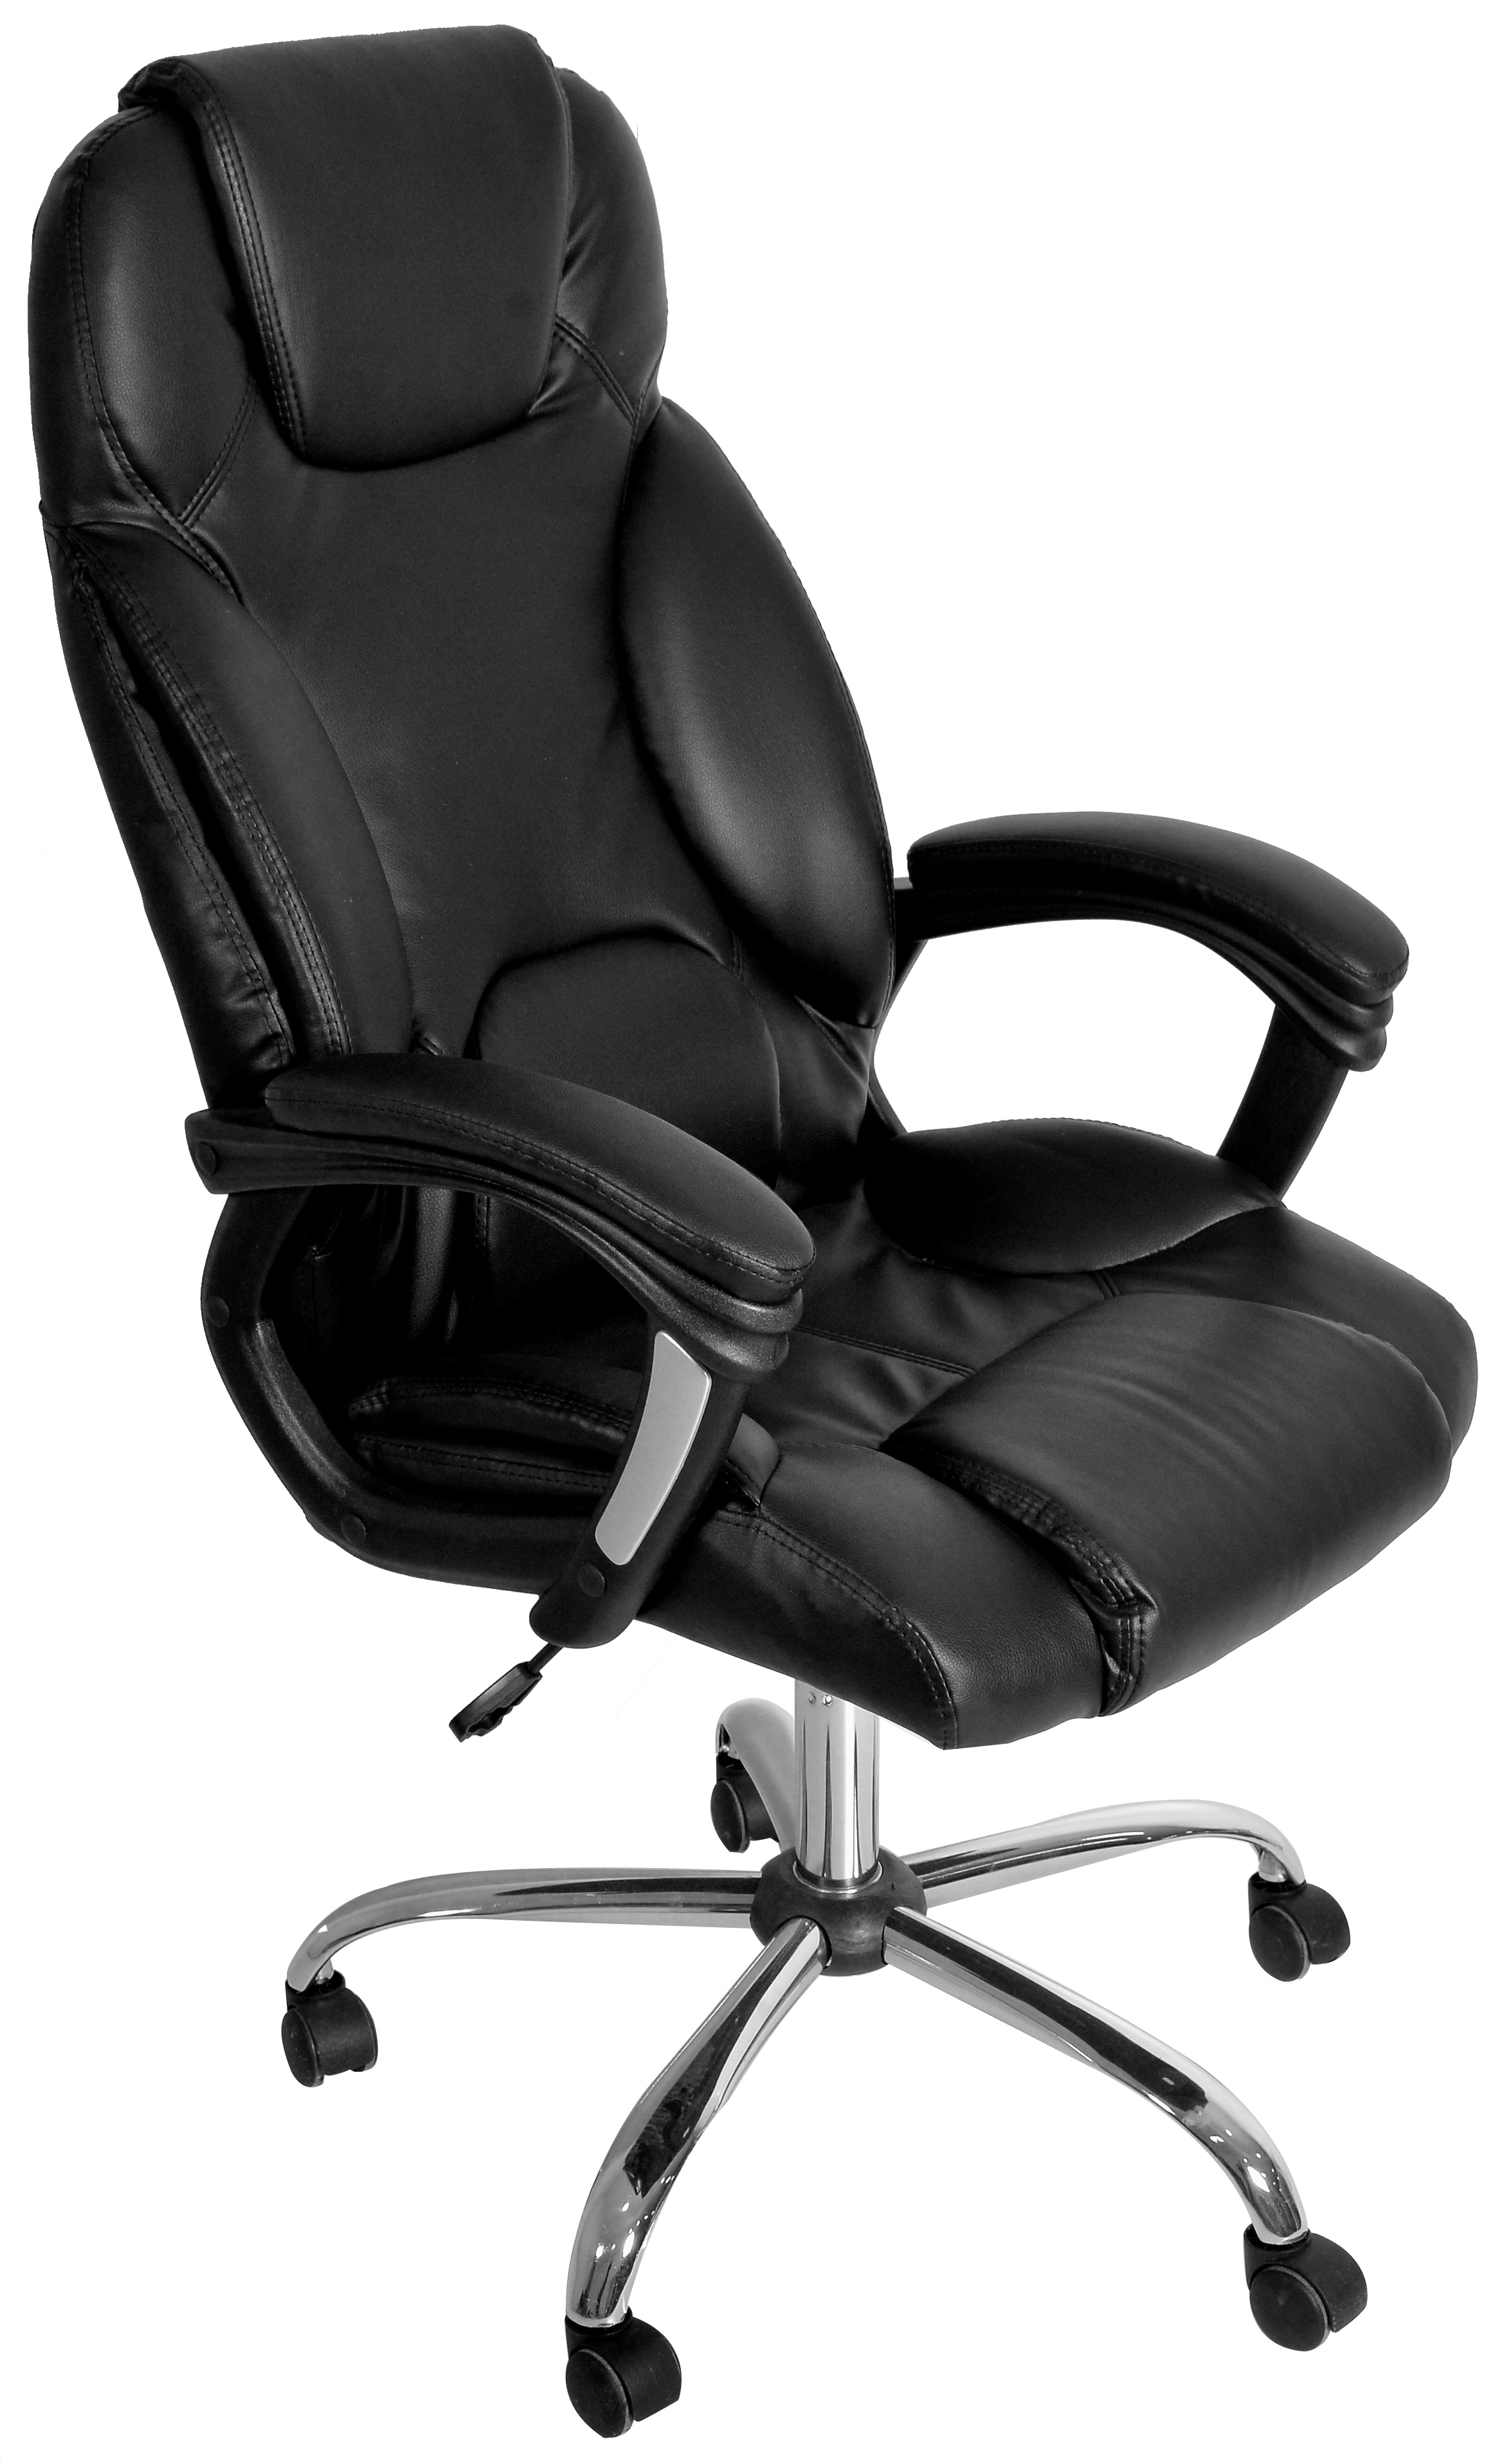  кресло Deco BX-3022 Black,  по выгодной цене с доставкой .